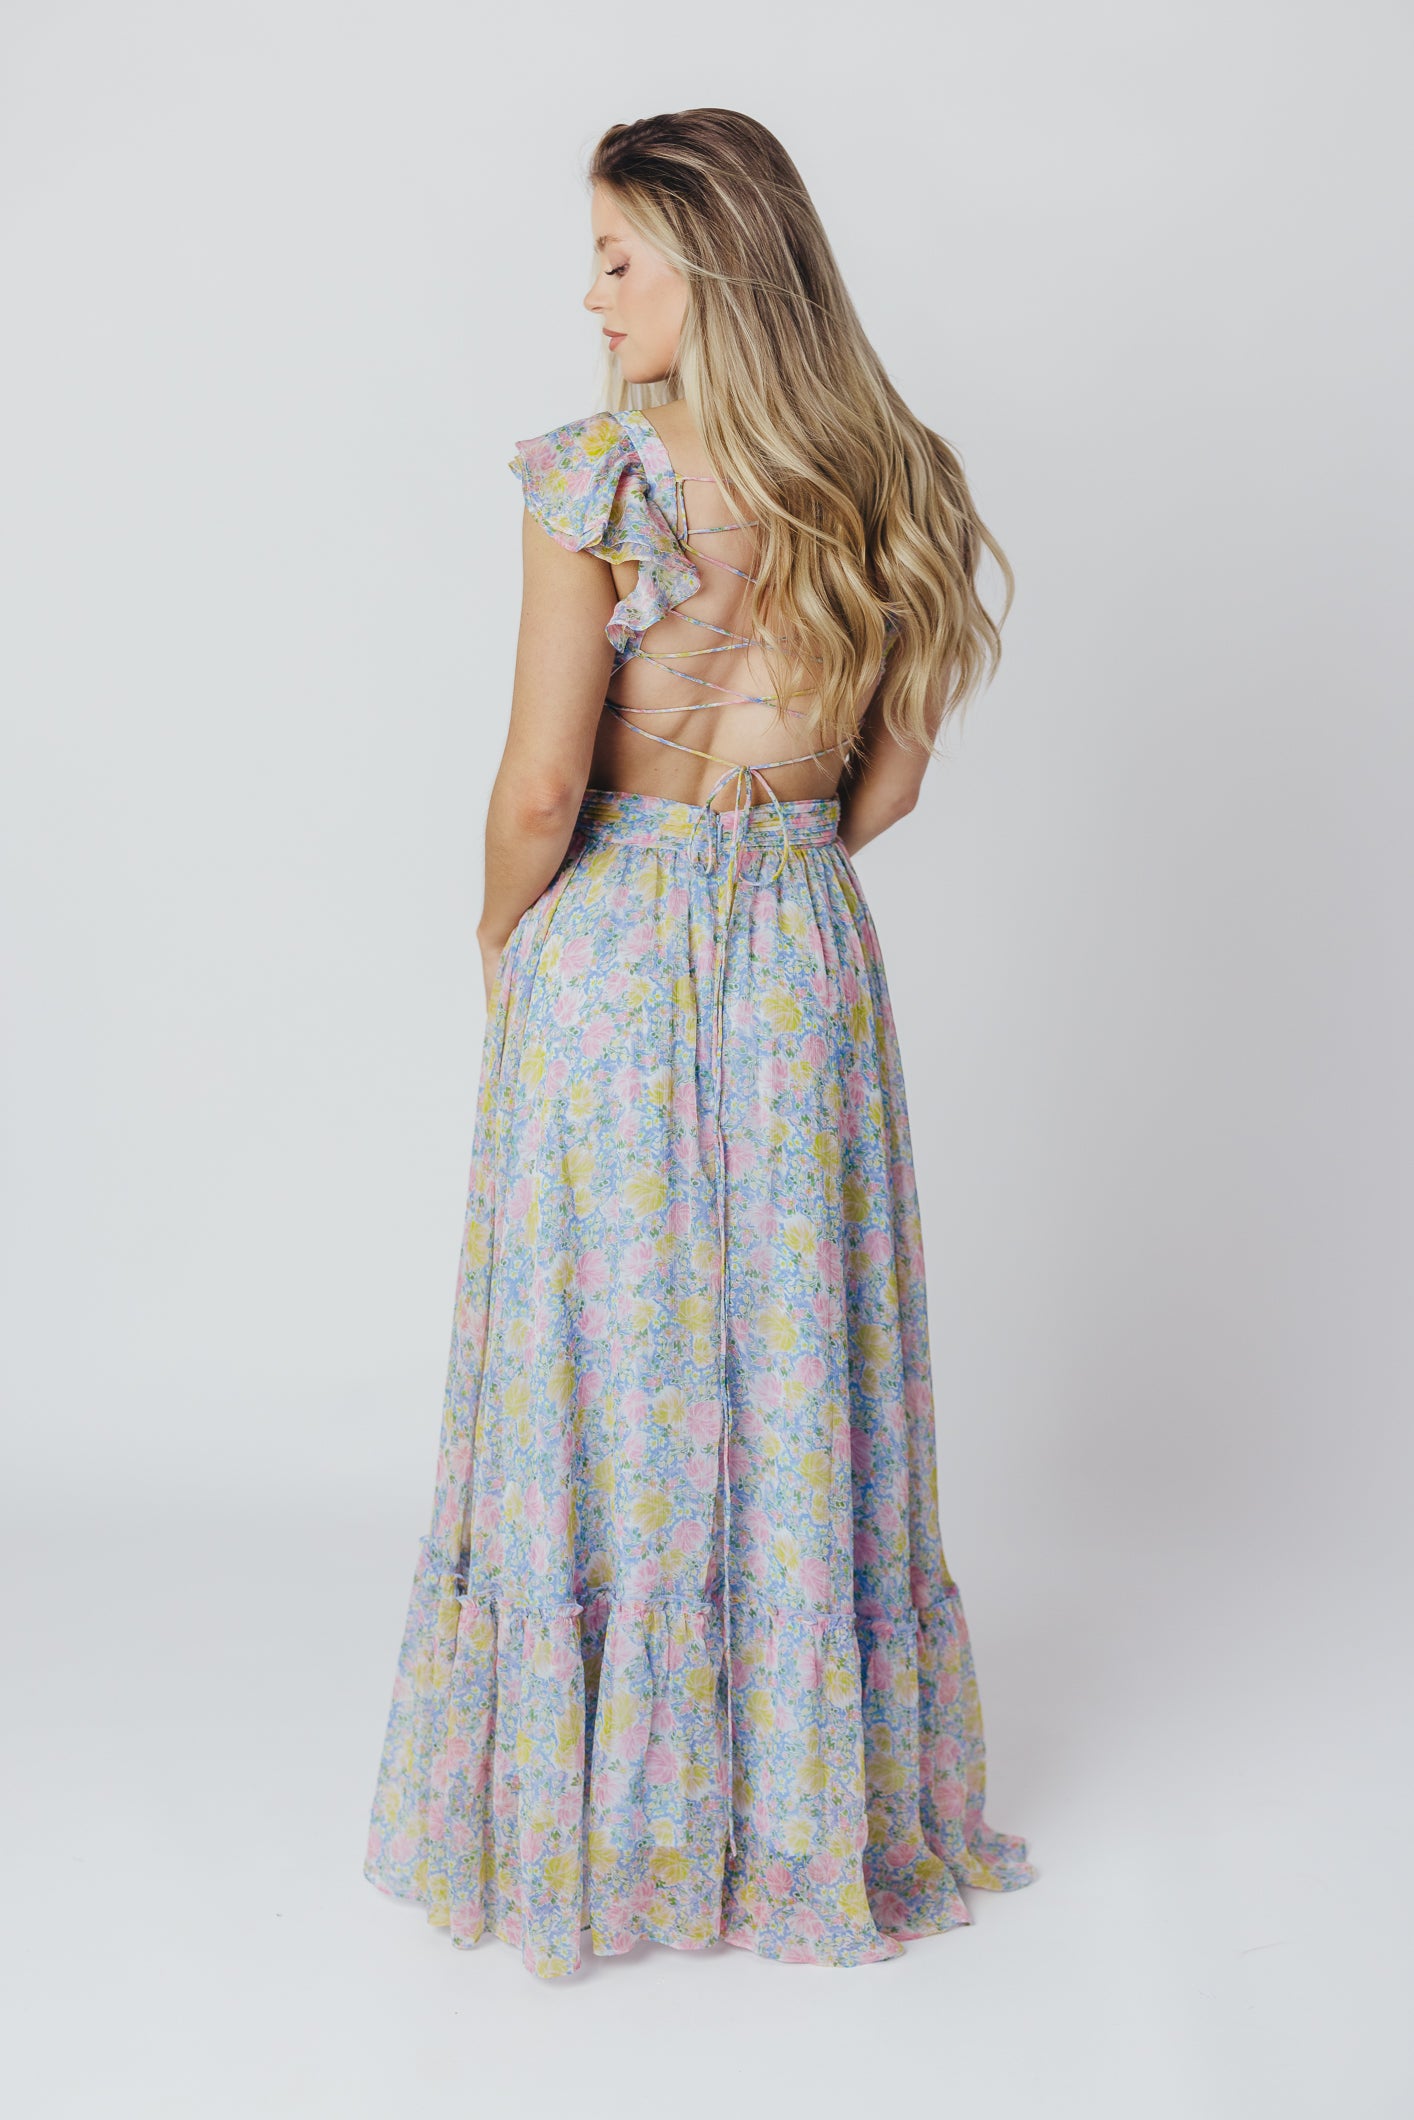 ASTR Primrose Maxi Dress in Blue/Pink Floral